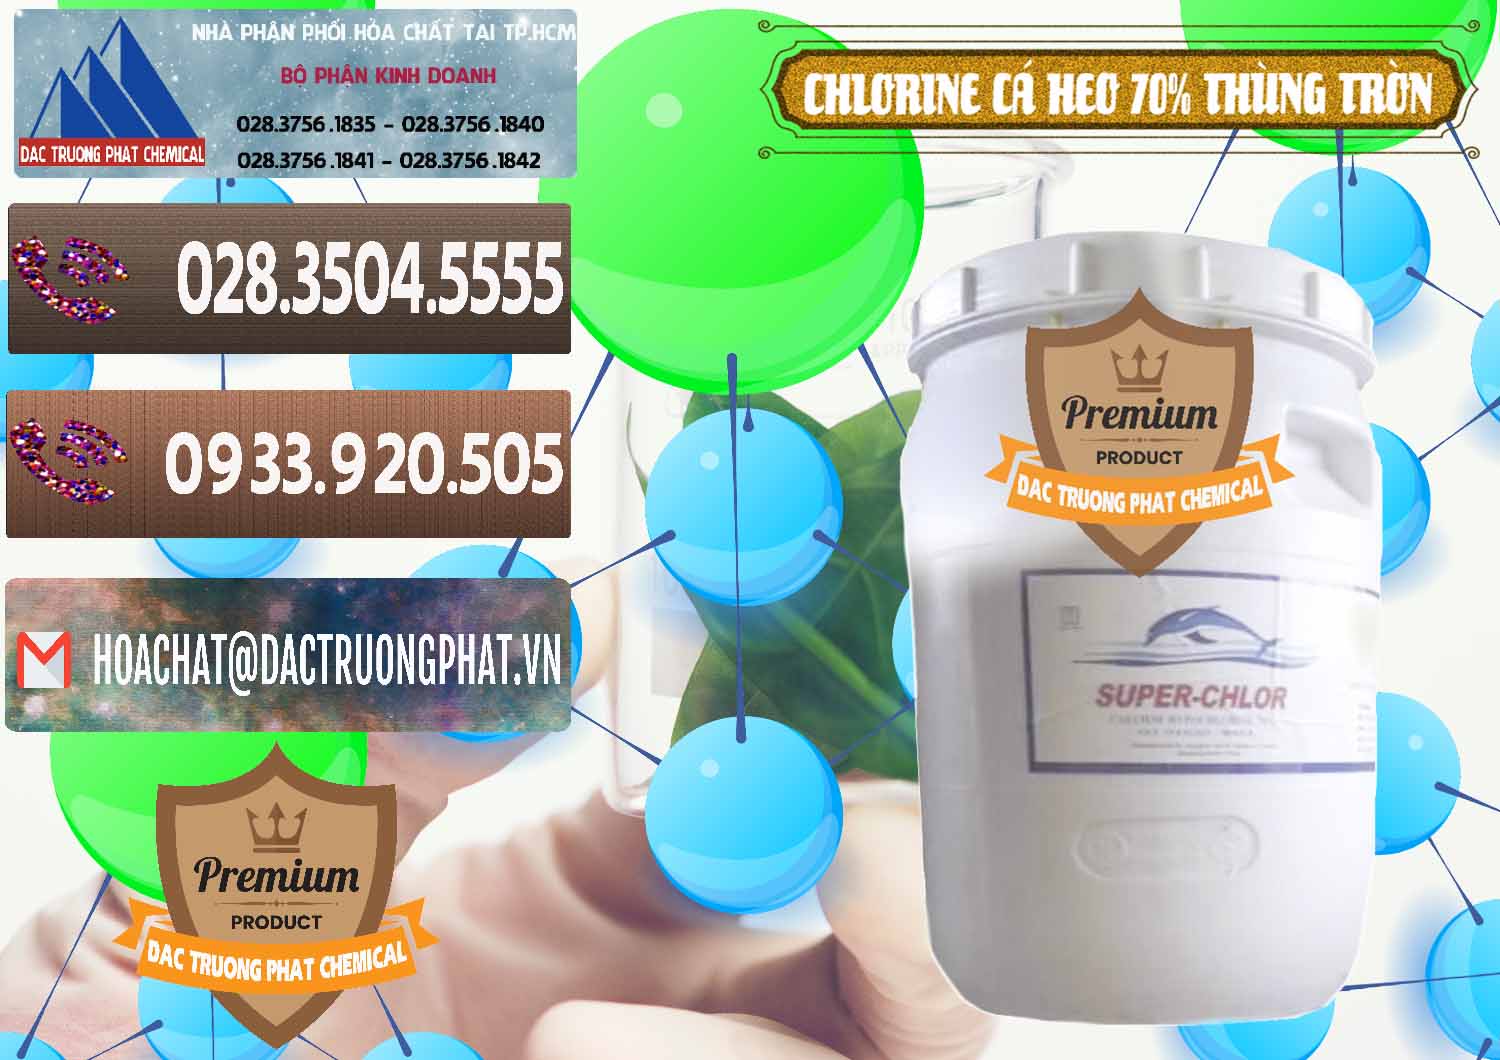 Công ty cung cấp - bán Clorin - Chlorine Cá Heo 70% Super Chlor Thùng Tròn Nắp Trắng Trung Quốc China - 0239 - Đơn vị chuyên phân phối ( bán ) hóa chất tại TP.HCM - hoachatviet.net